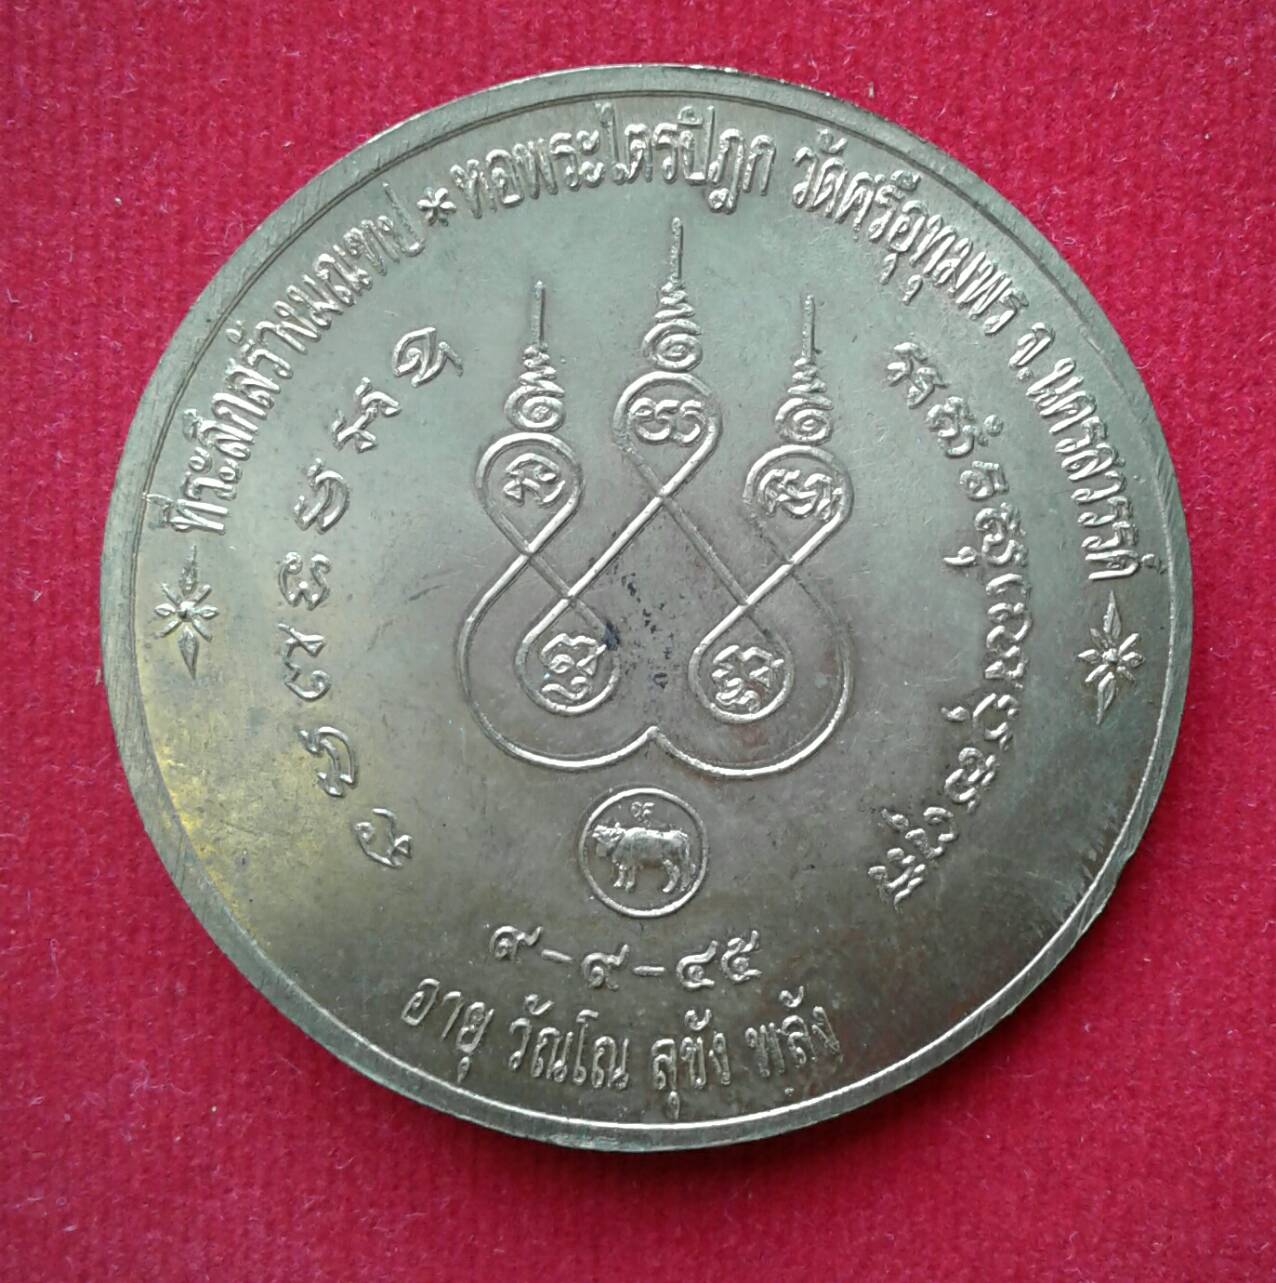 เหรียญบาตรน้ำมนต์ หลวงพ่อจ้อย จันทสุวัณโณ วัดศรีอุทุมพร จ.นครสวรรค์ รุ่นที่ระลึกสร้างมณฑป หอพระไตรปิฏก พ.ศ. ๒๕๔๕ (๙-๙-๔๕) เนื้อทองฝาบาตร สวยวิ้ง 